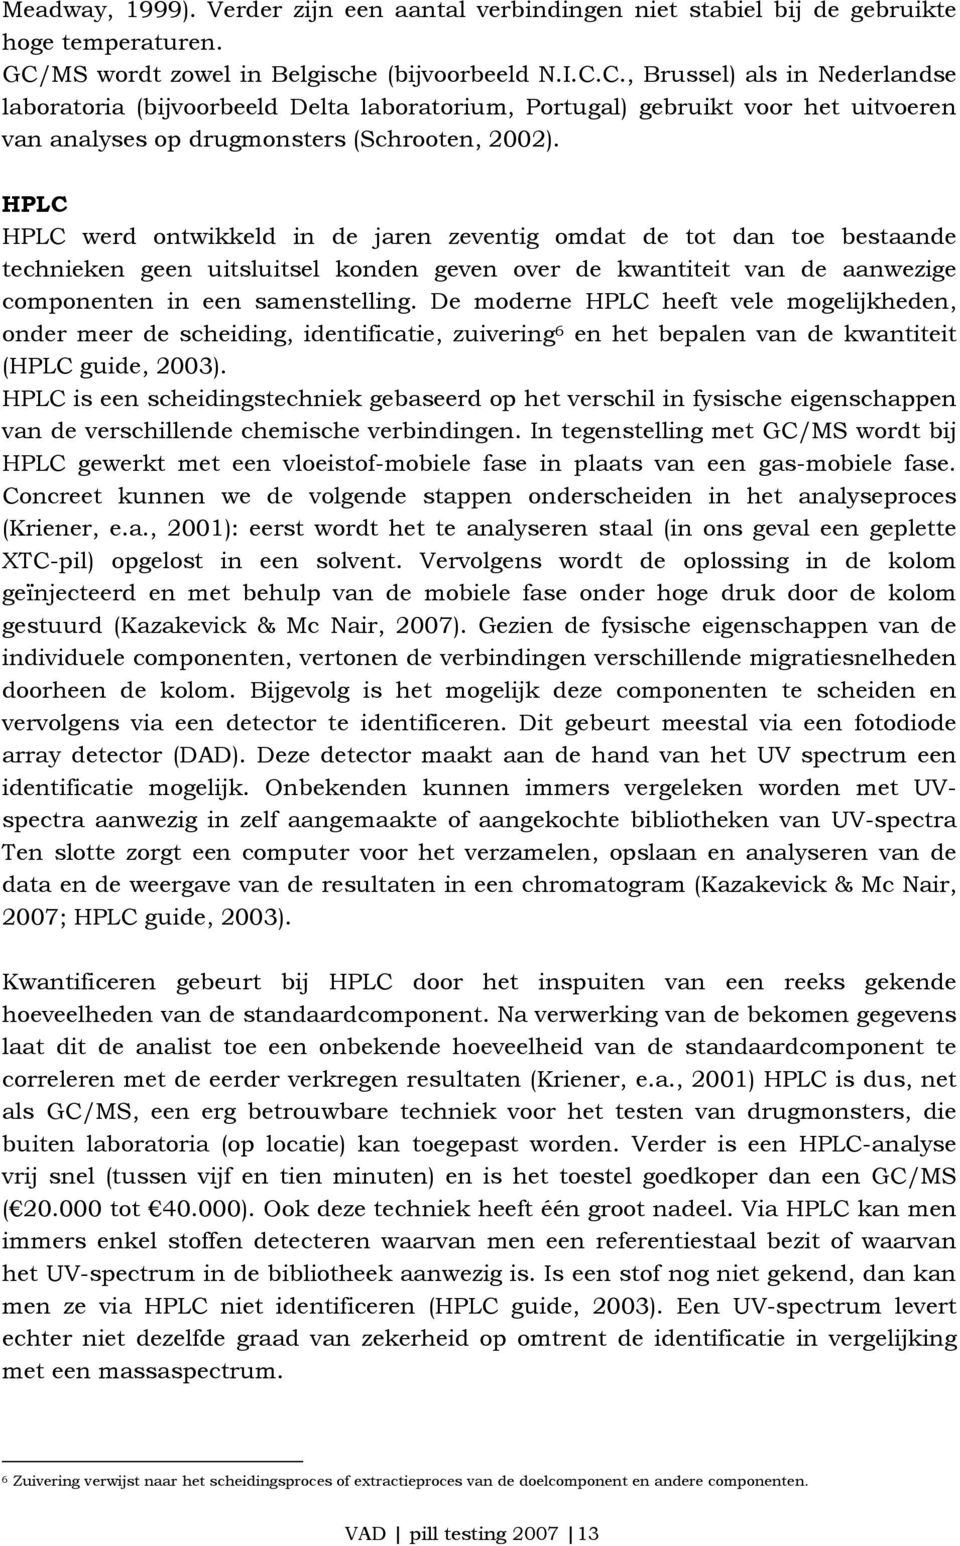 C., Brussel) als in Nederlandse laboratoria (bijvoorbeeld Delta laboratorium, Portugal) gebruikt voor het uitvoeren van analyses op drugmonsters (Schrooten, 2002).